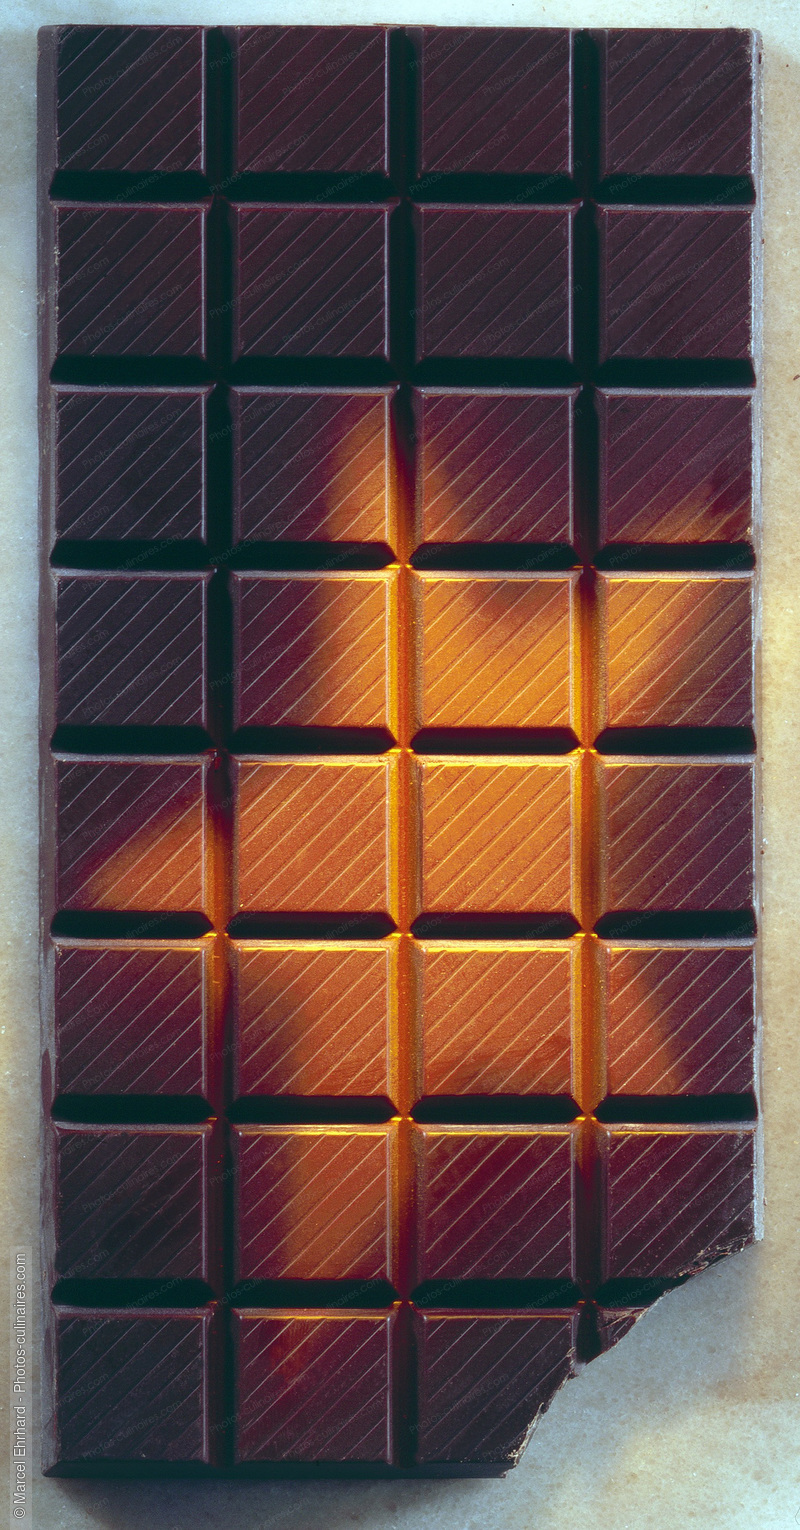 Tablette de chocolat avec étoile - photo référence DE154.jpg